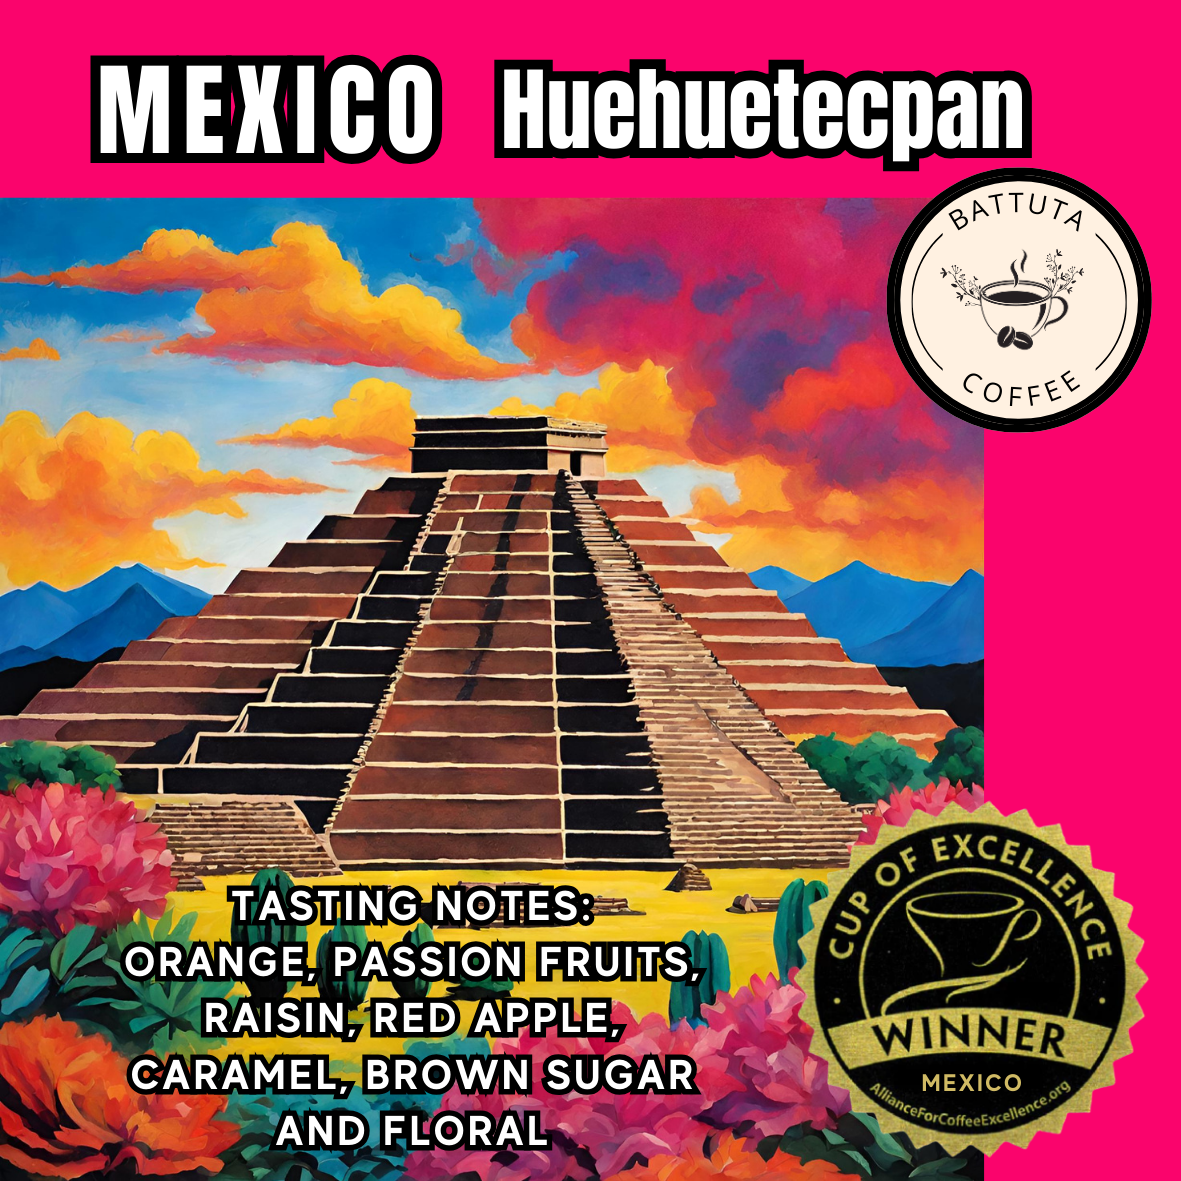 [Battuta Coffee] Mexico Huehuetecpan Cup of Excellence coffee - 100% Arabica